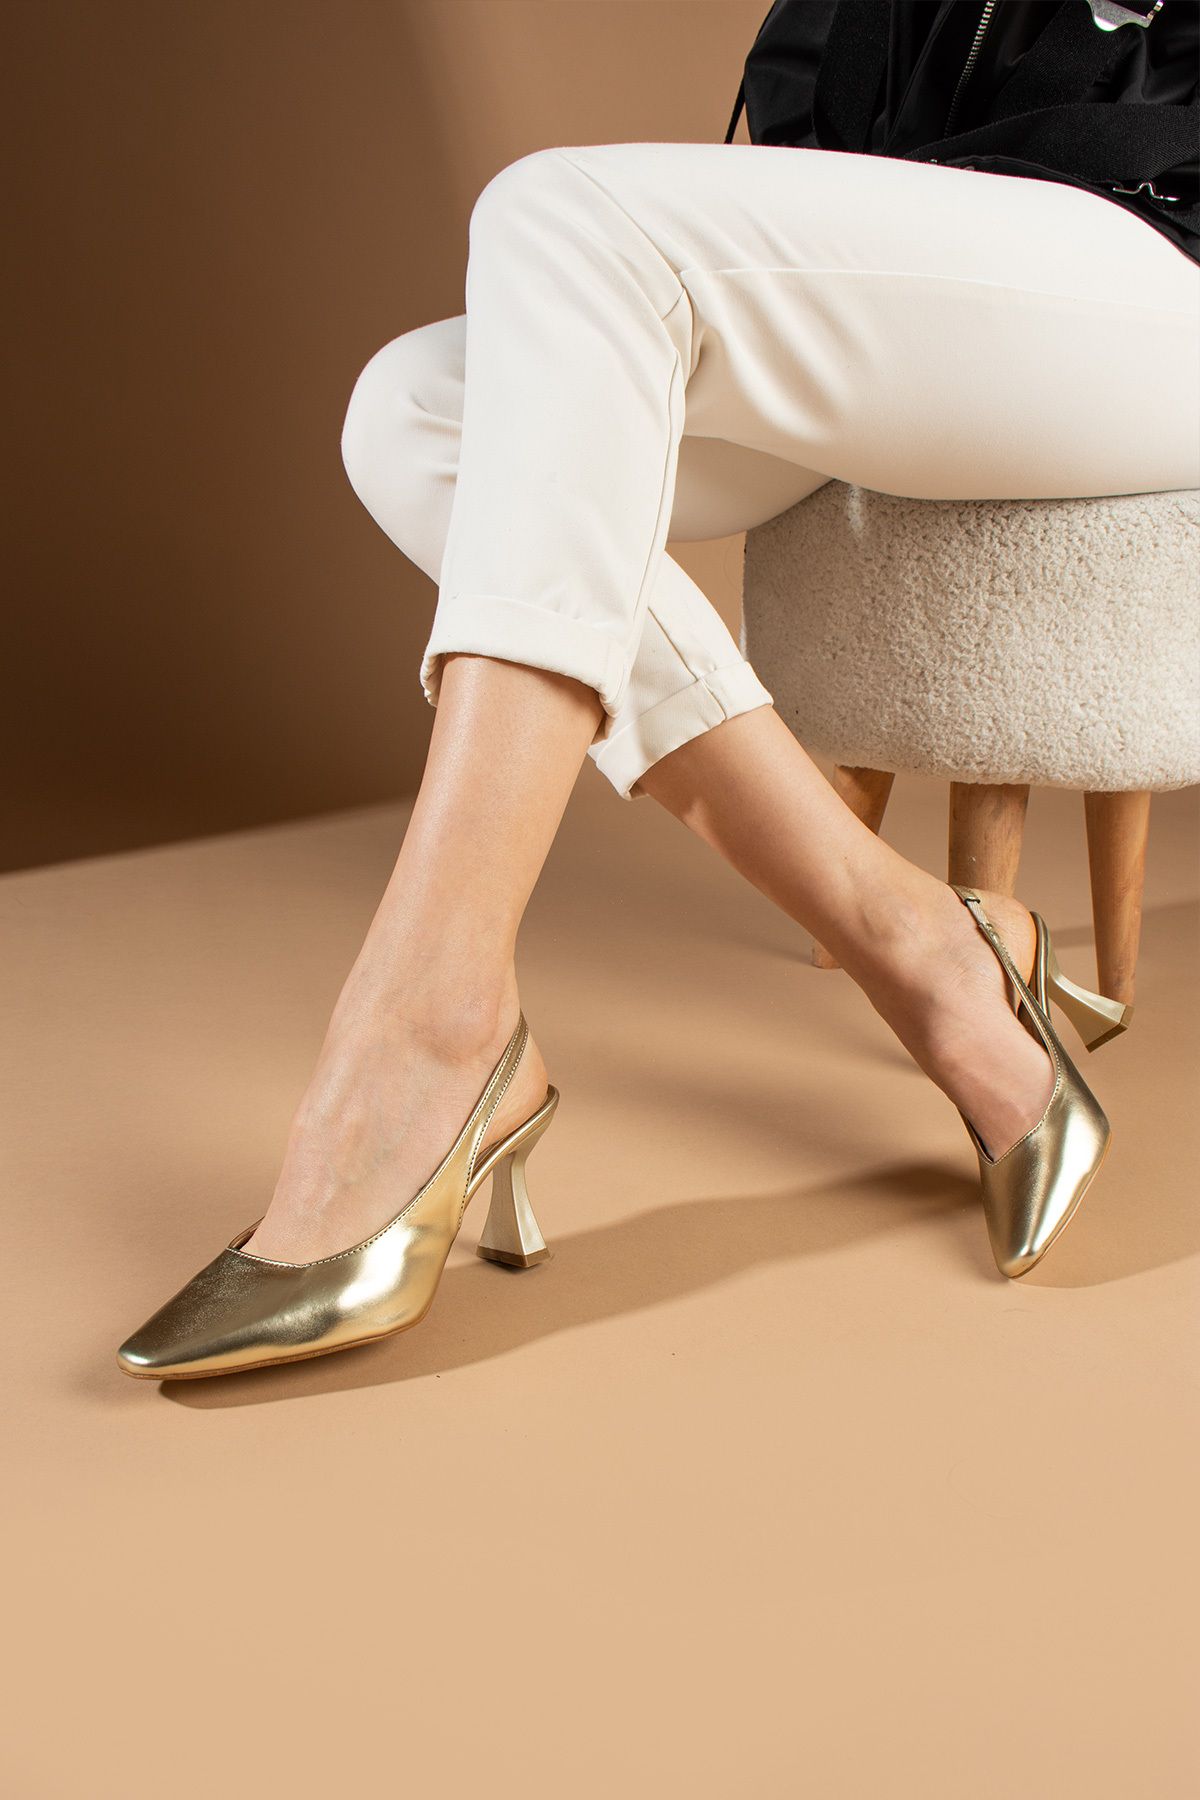 LEYLA STORE Leona Gold Klasik Topuklu Ayakkabı